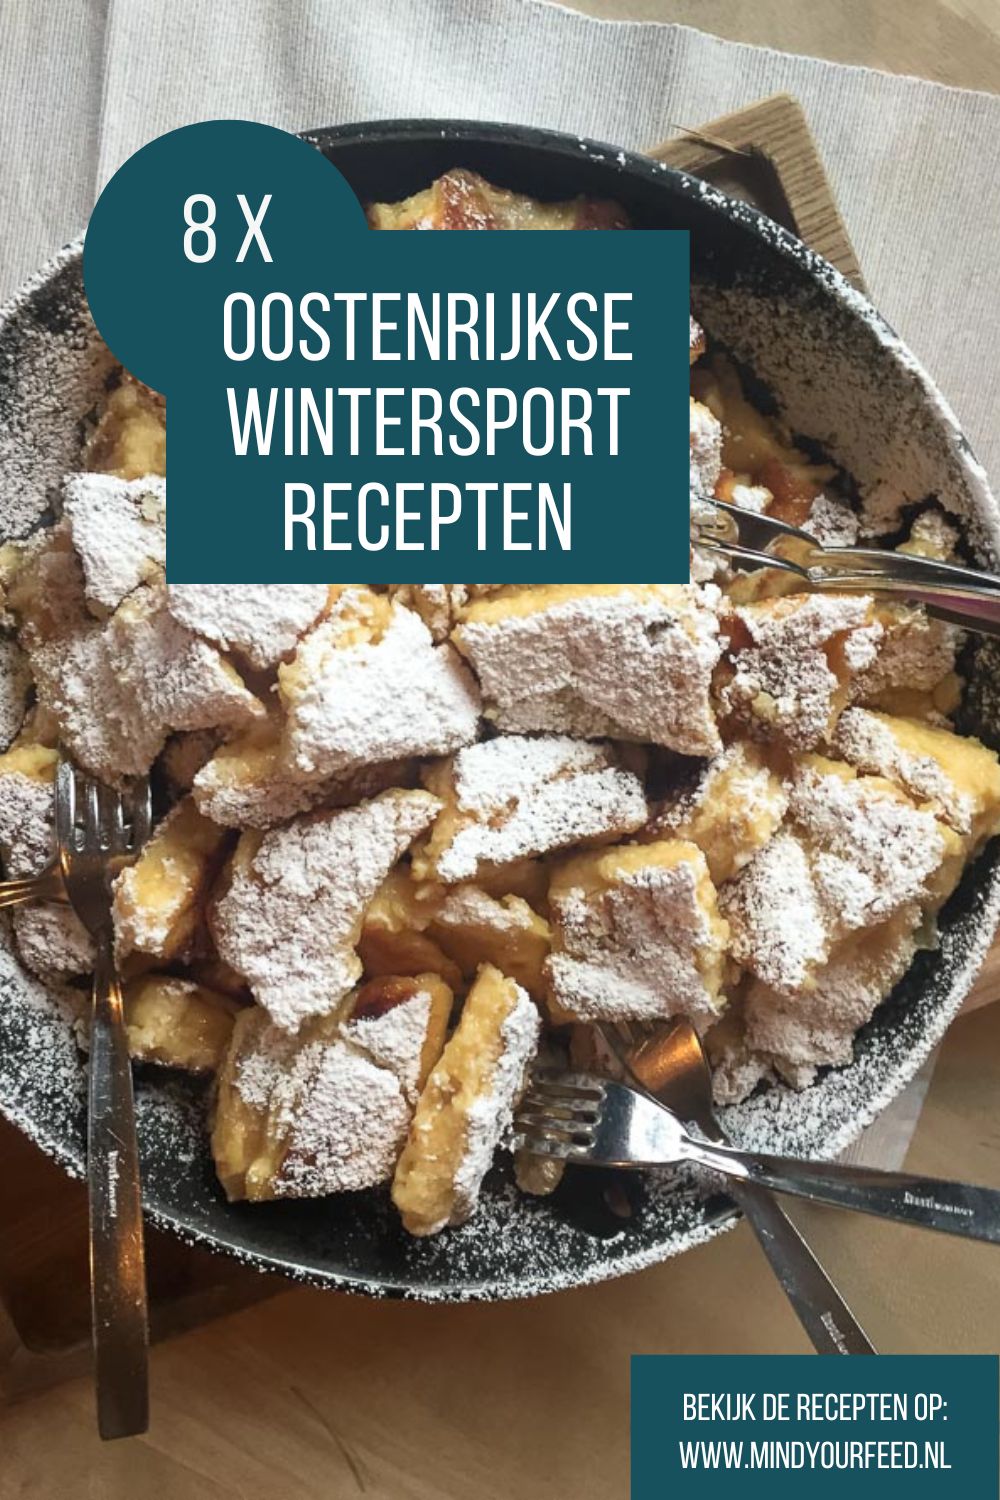 Typische wintersport recepten, zoals tiroler grostl, goulash suppe, kaiserschmarrn, apfelstrudel en meer. Oostenrijkse recepten voor thuis.